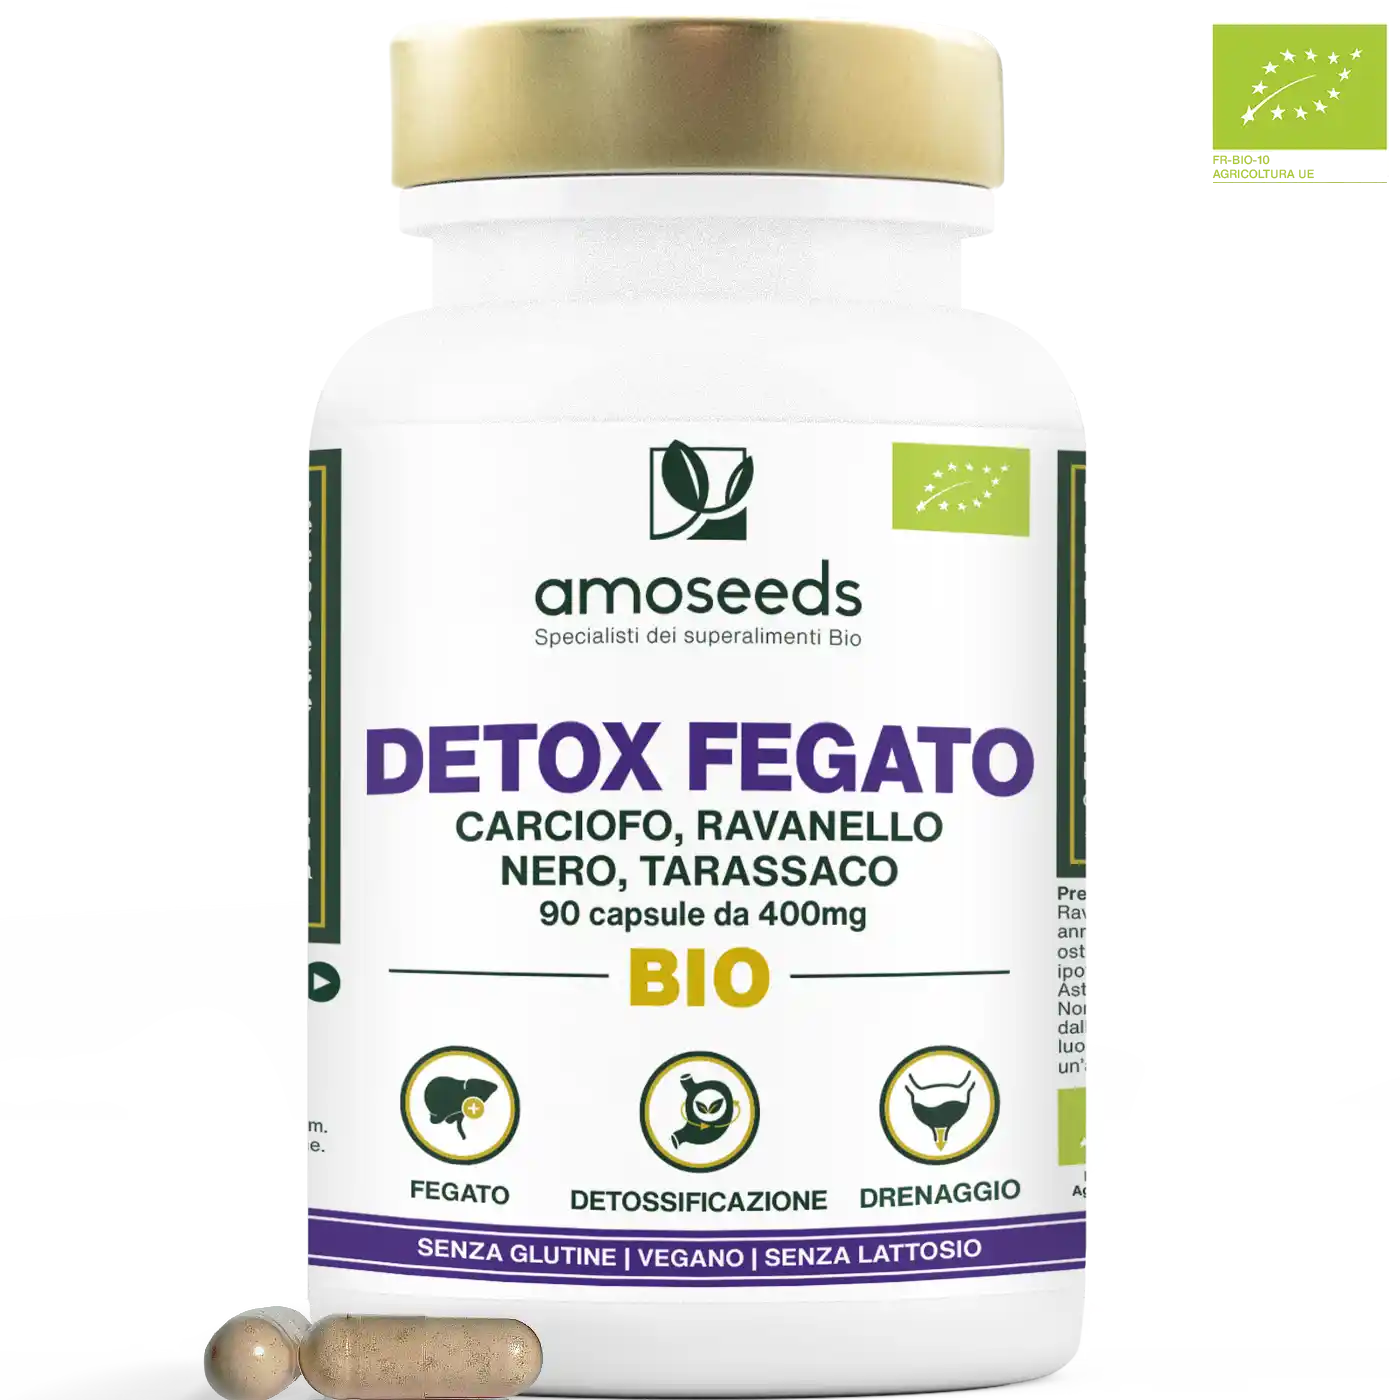 Detox Fegato Bio amoseeds specialisti dei superalimenti bio